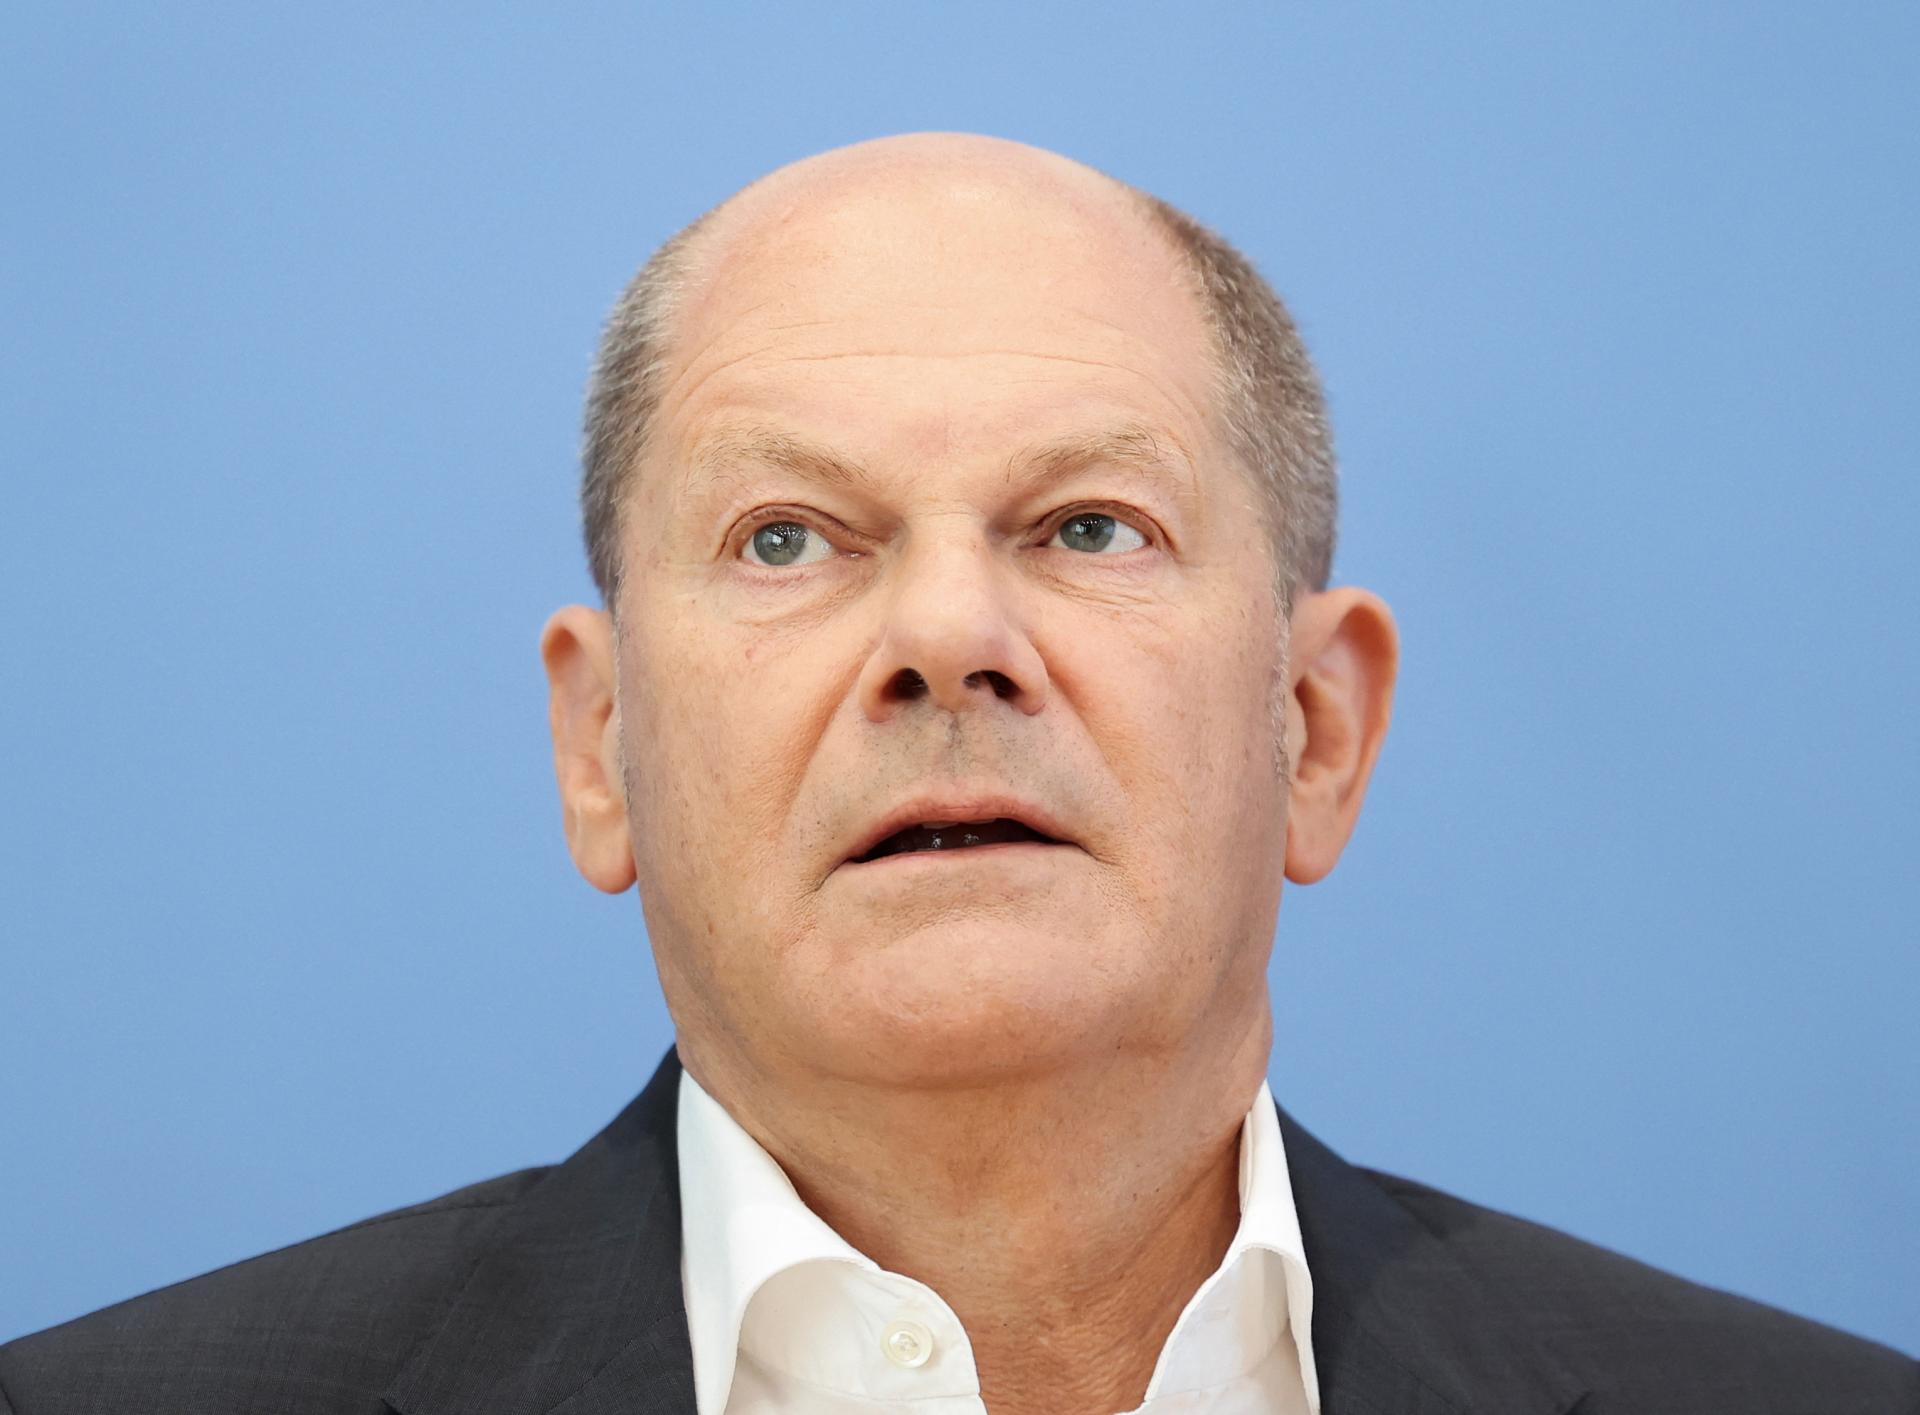 Merkelovej strana CDU vyzvala Scholza, aby vysvetlil svoju účasť na daňovom škandále